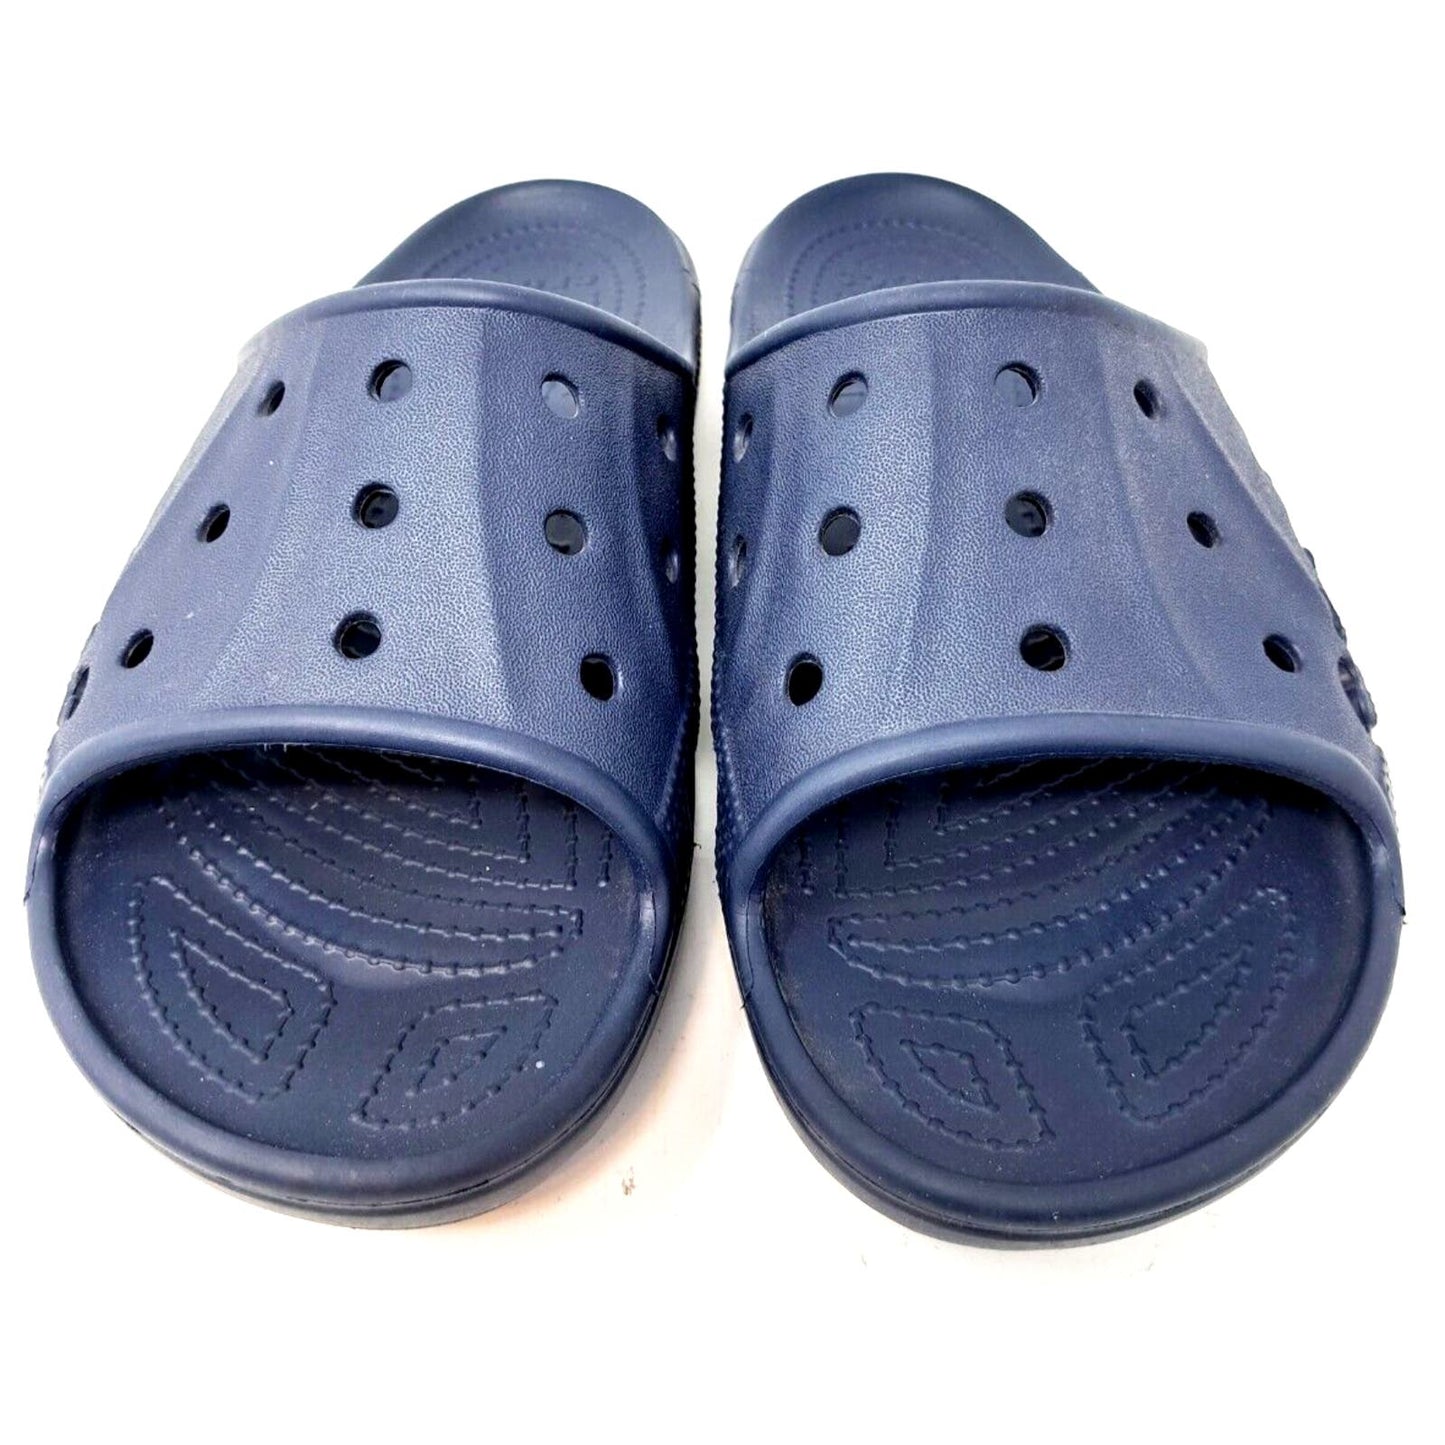 Crocs Slides Black Mens Size 8 Women’s 10 Sandals Shoes Blue Great Shape